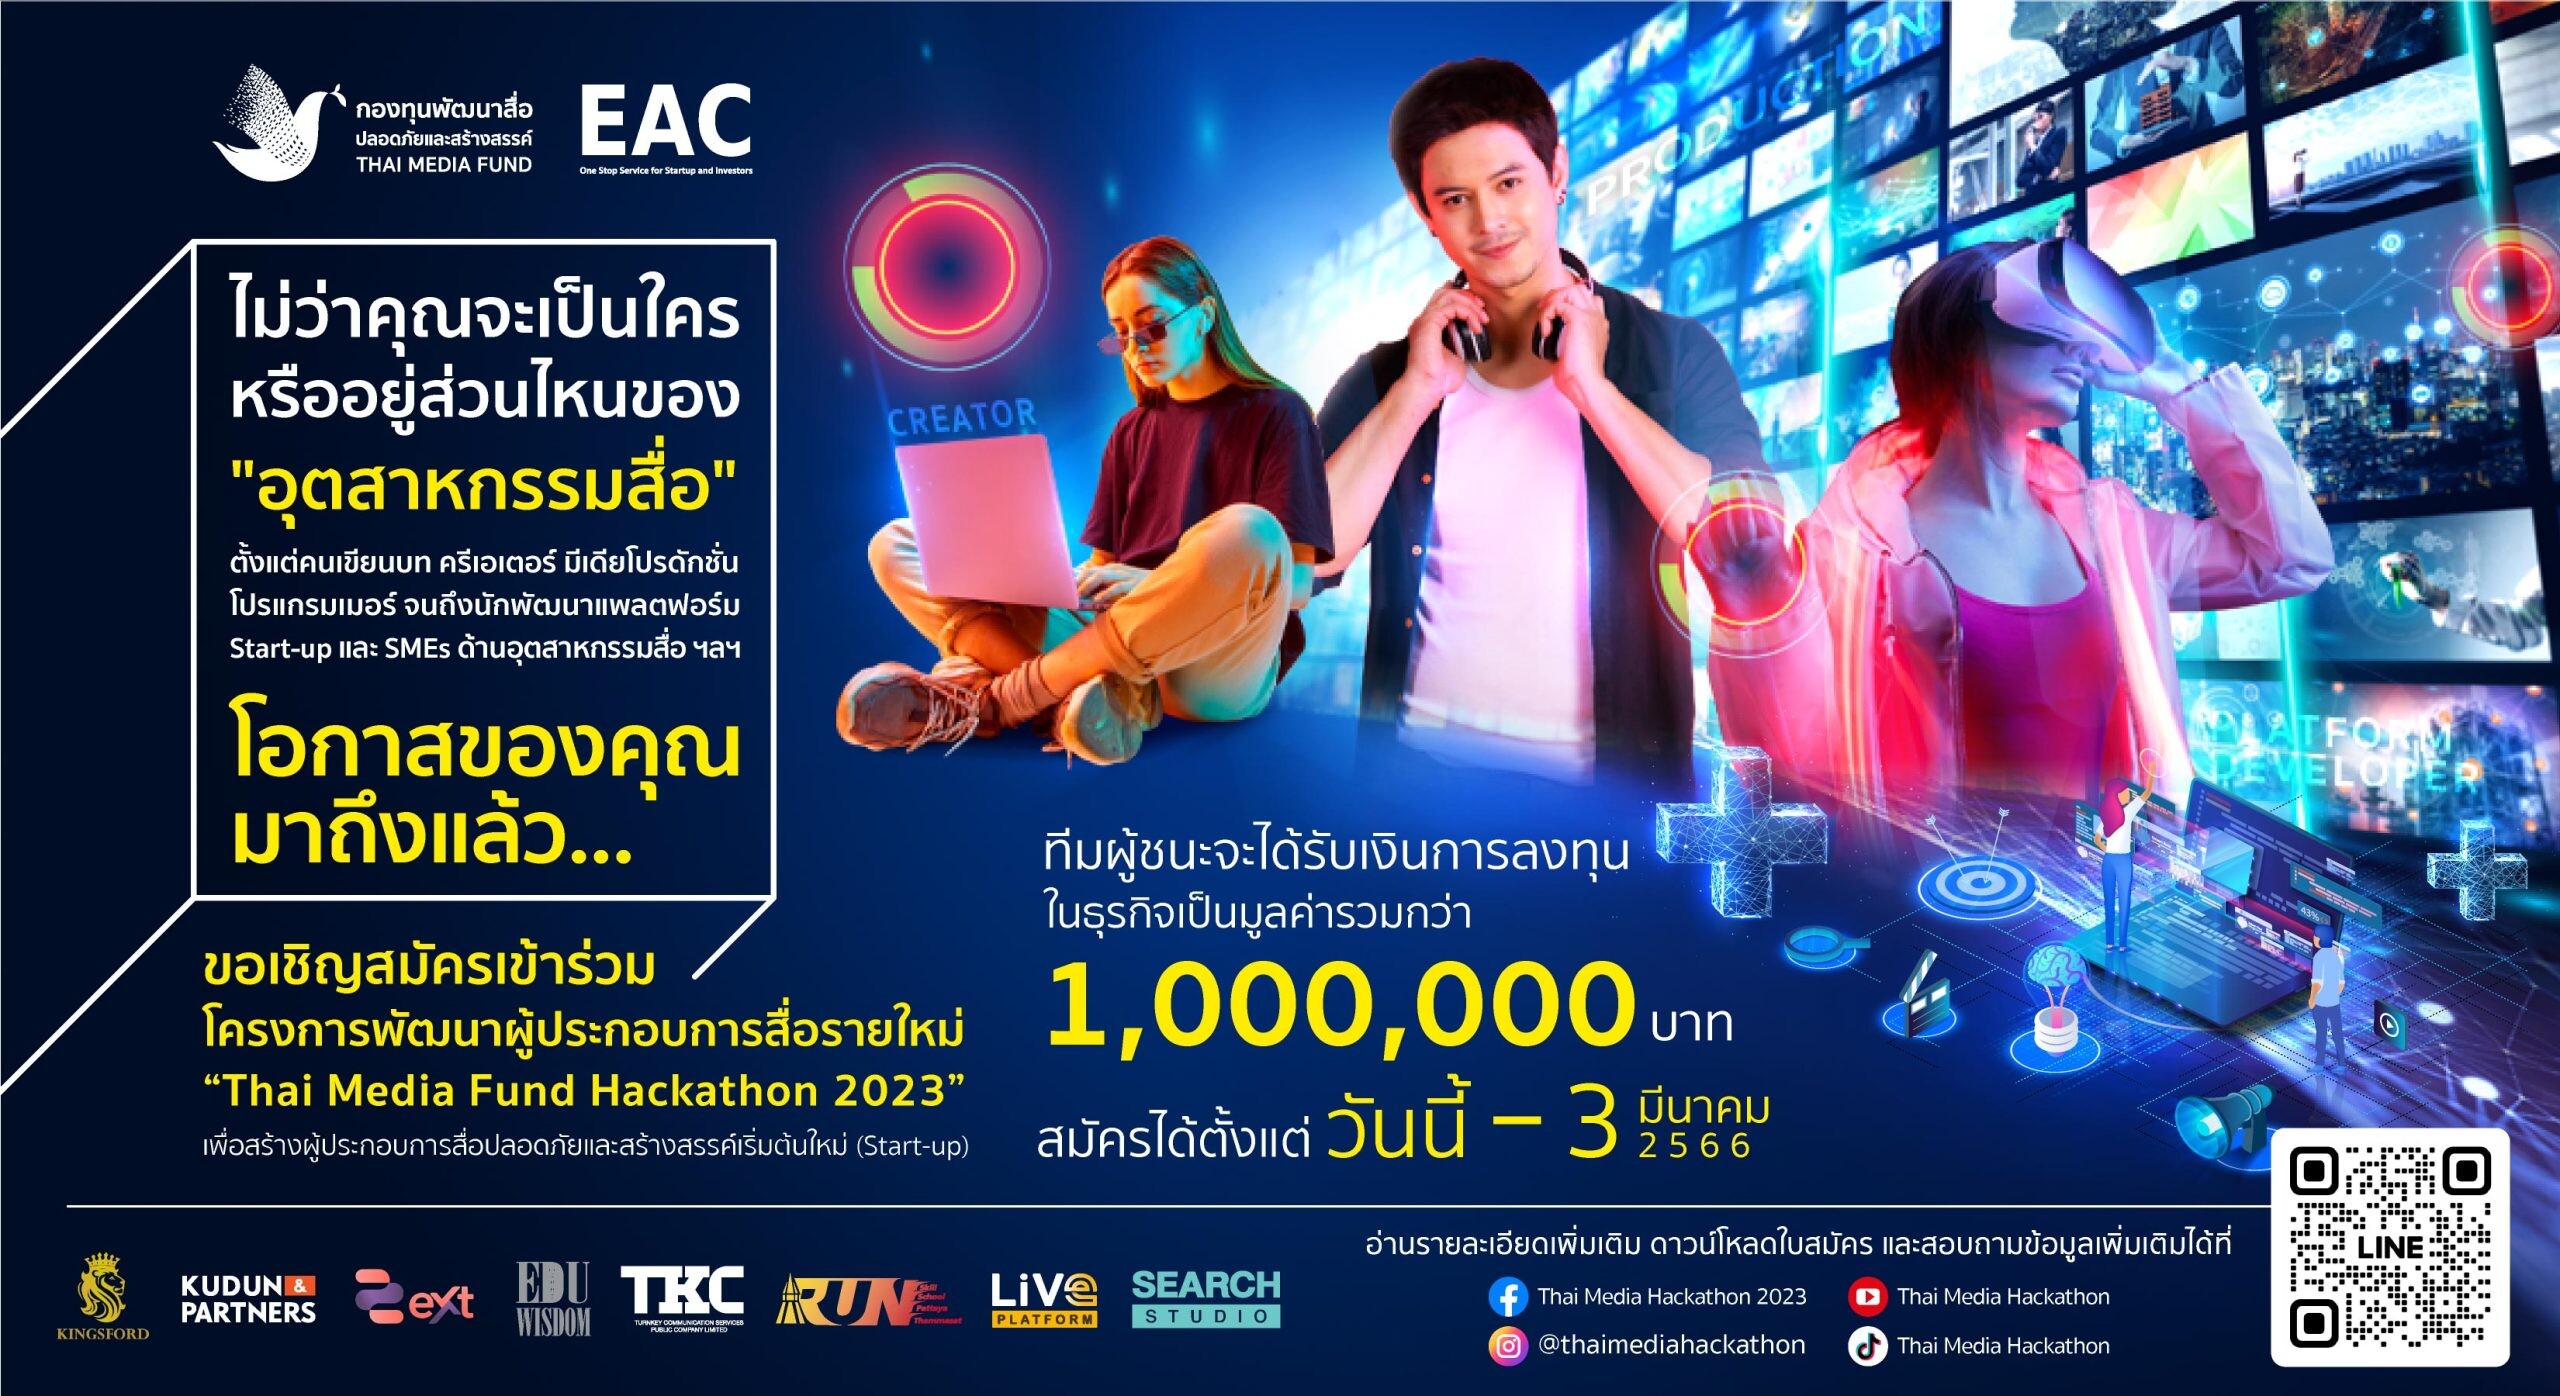 เปิดตัว "Thai Media Fund Hackathon 2023" โครงการพัฒนาผู้ประกอบการสื่อรายใหม่ที่มีแนวคิดผลิตสื่อปลอดภัยและสร้างสรรค์